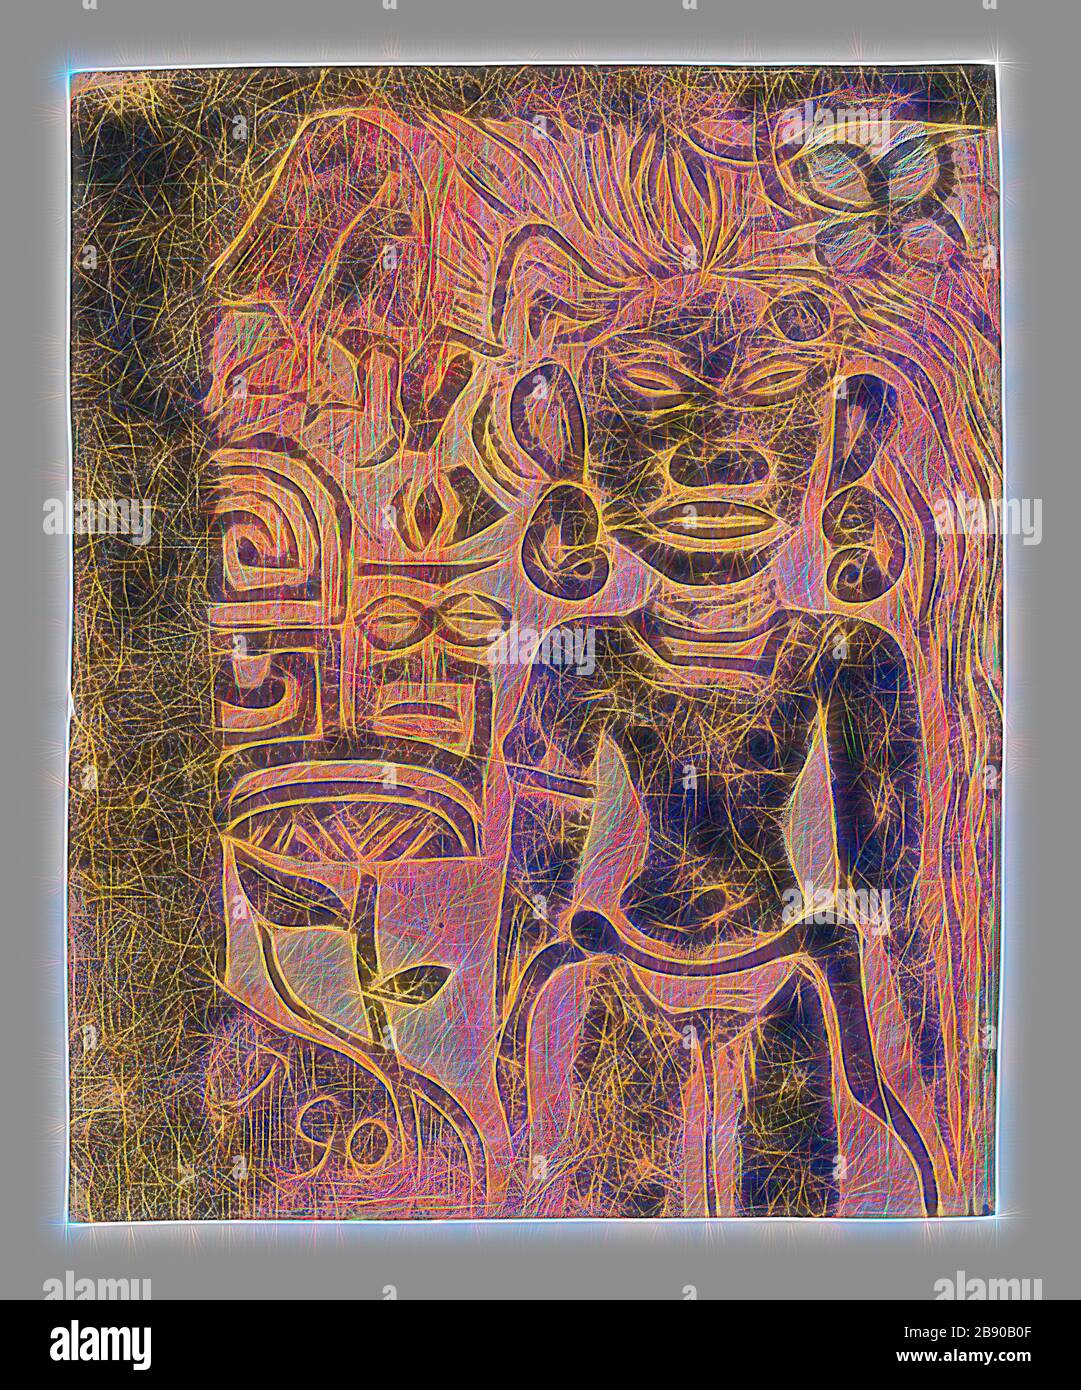 Idolo tahitiano - la dea Hina, 1894/95, Paul Gauguin, francese, 1848-1903,  Francia, stampa a blocchi di legno in inchiostro nero, su pennello e  solvente sottile e applicato selettivamente ocra gialla, arancio rossastro